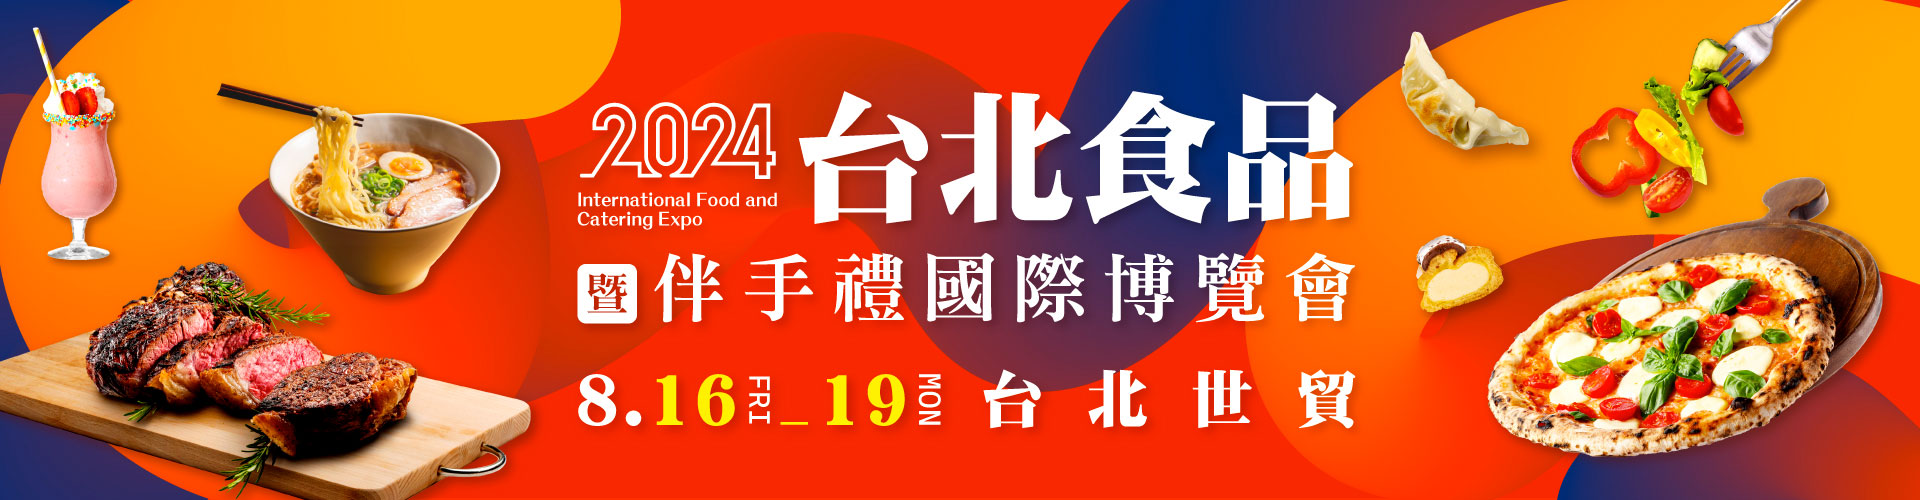 2024台北食品暨伴手禮國際博覽會